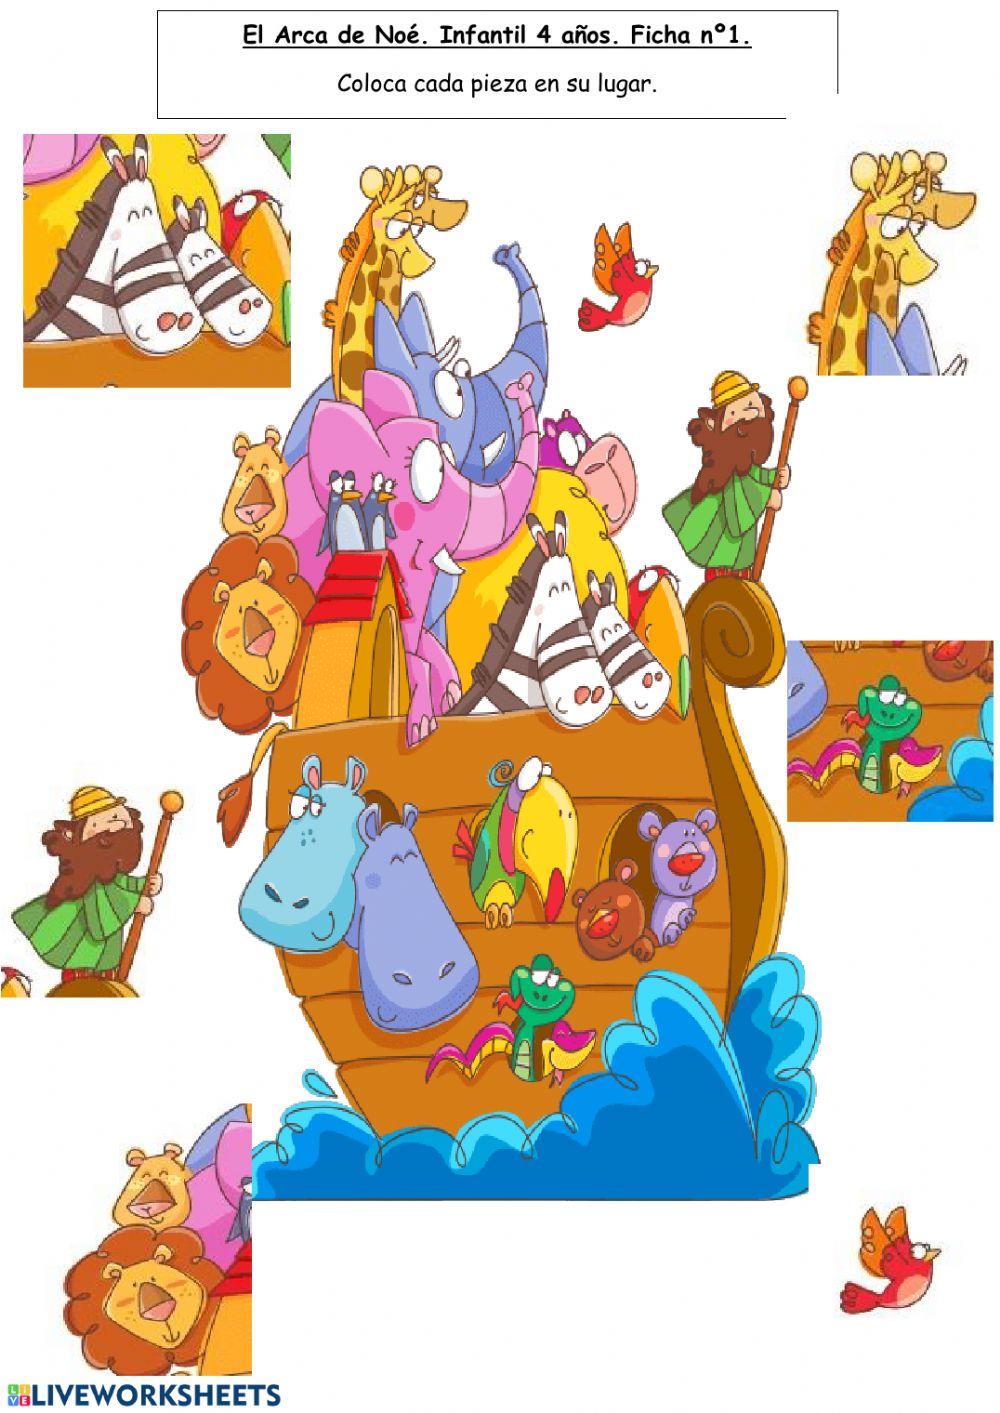 El Arca de Noé Infantil 4 años.